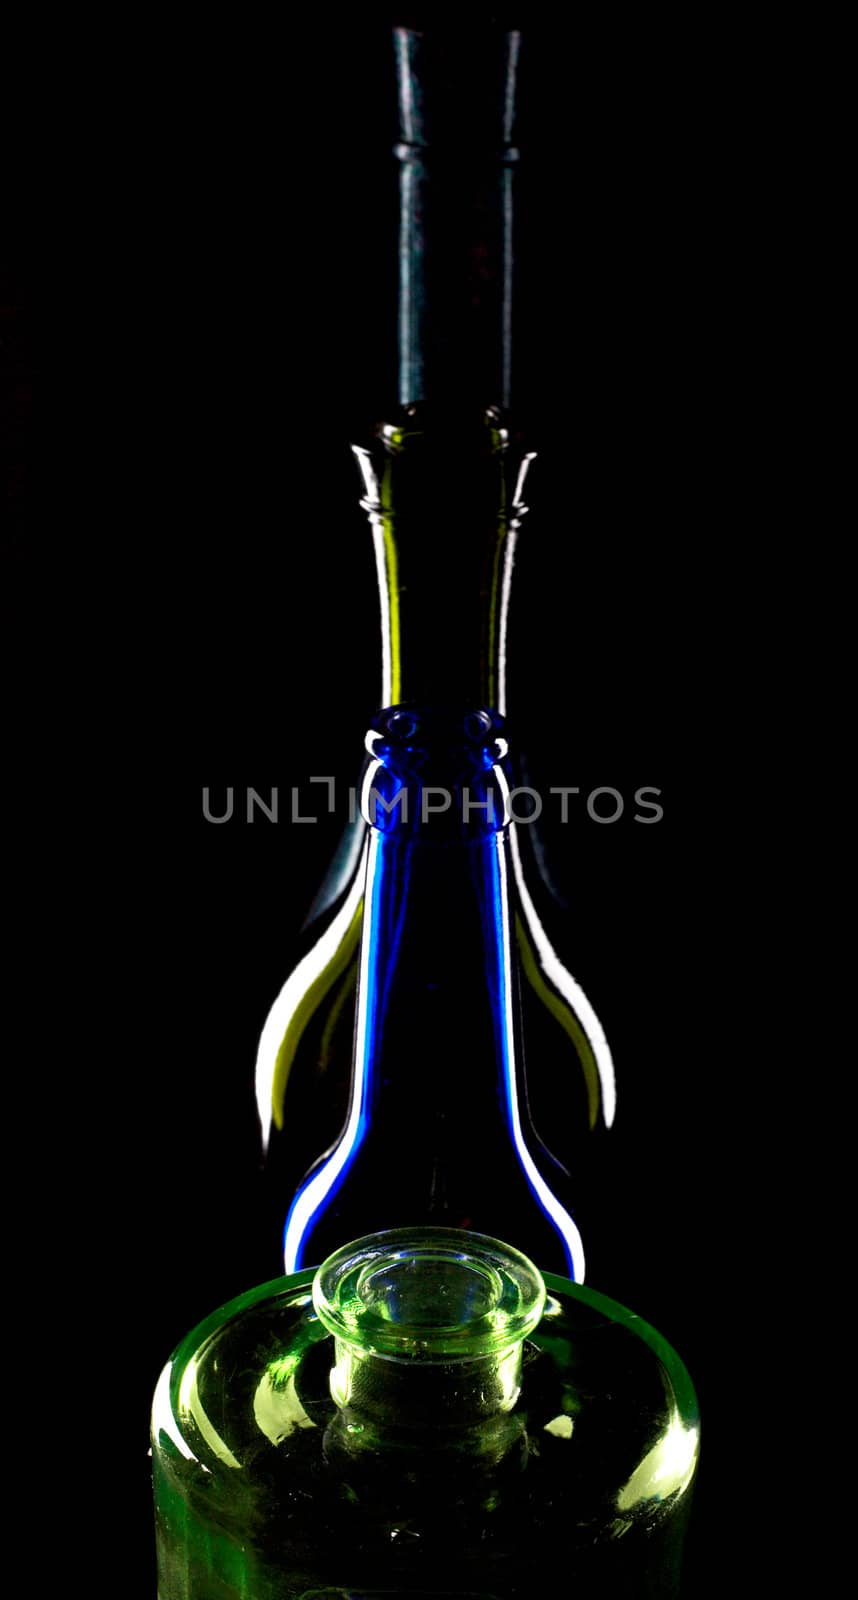 Bottles of wine on black background by velkol